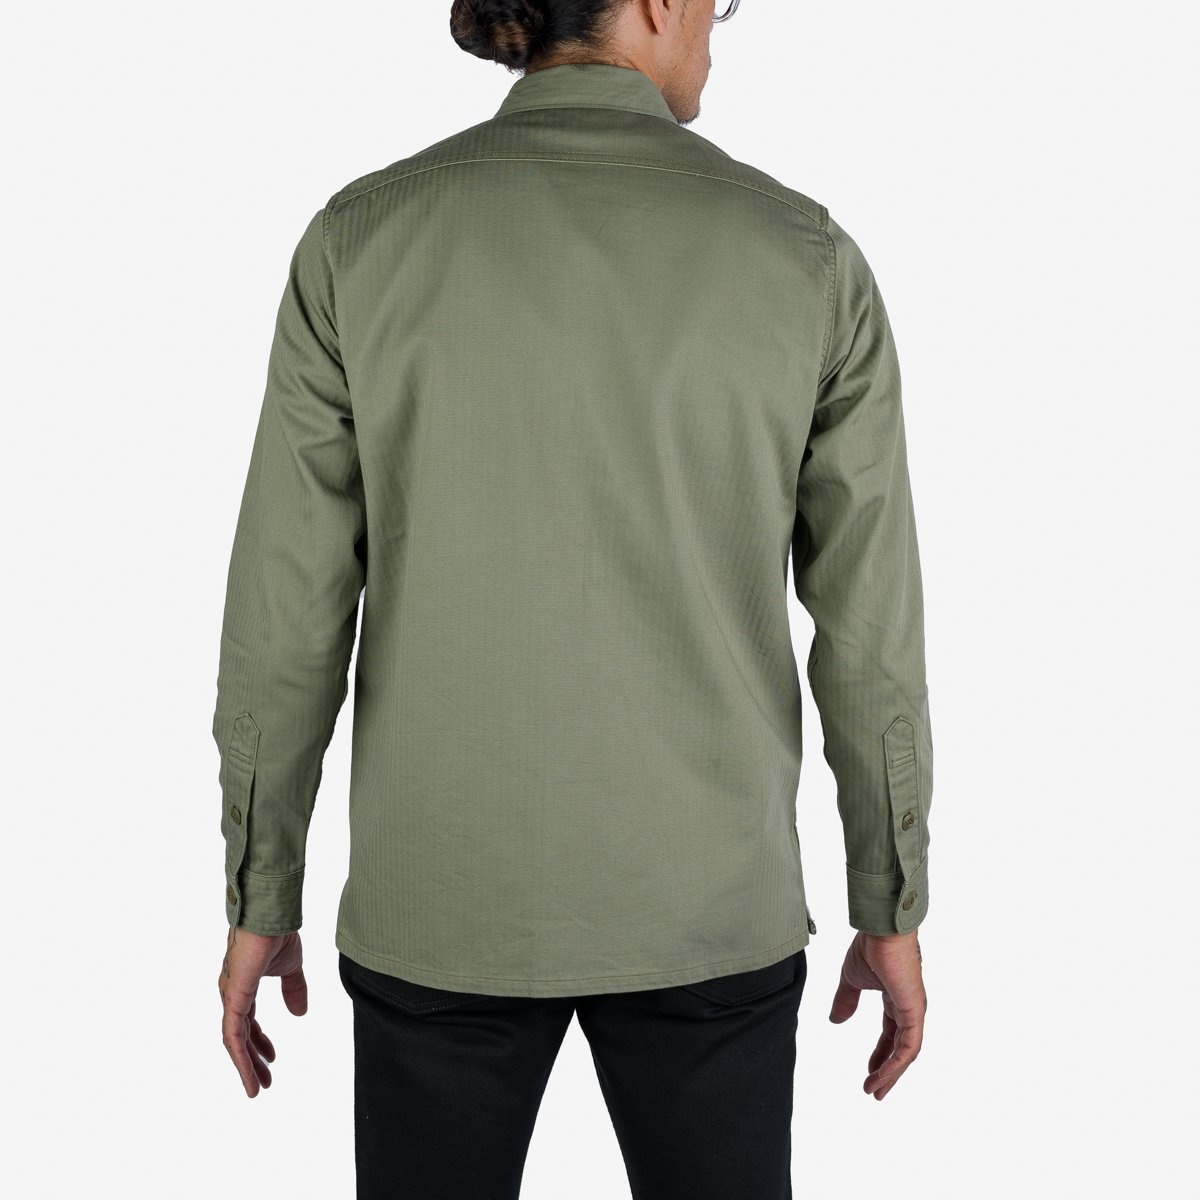 IHSH-385-ODG 9oz Herringbone Military Shirt - Olive Drab Green - 3